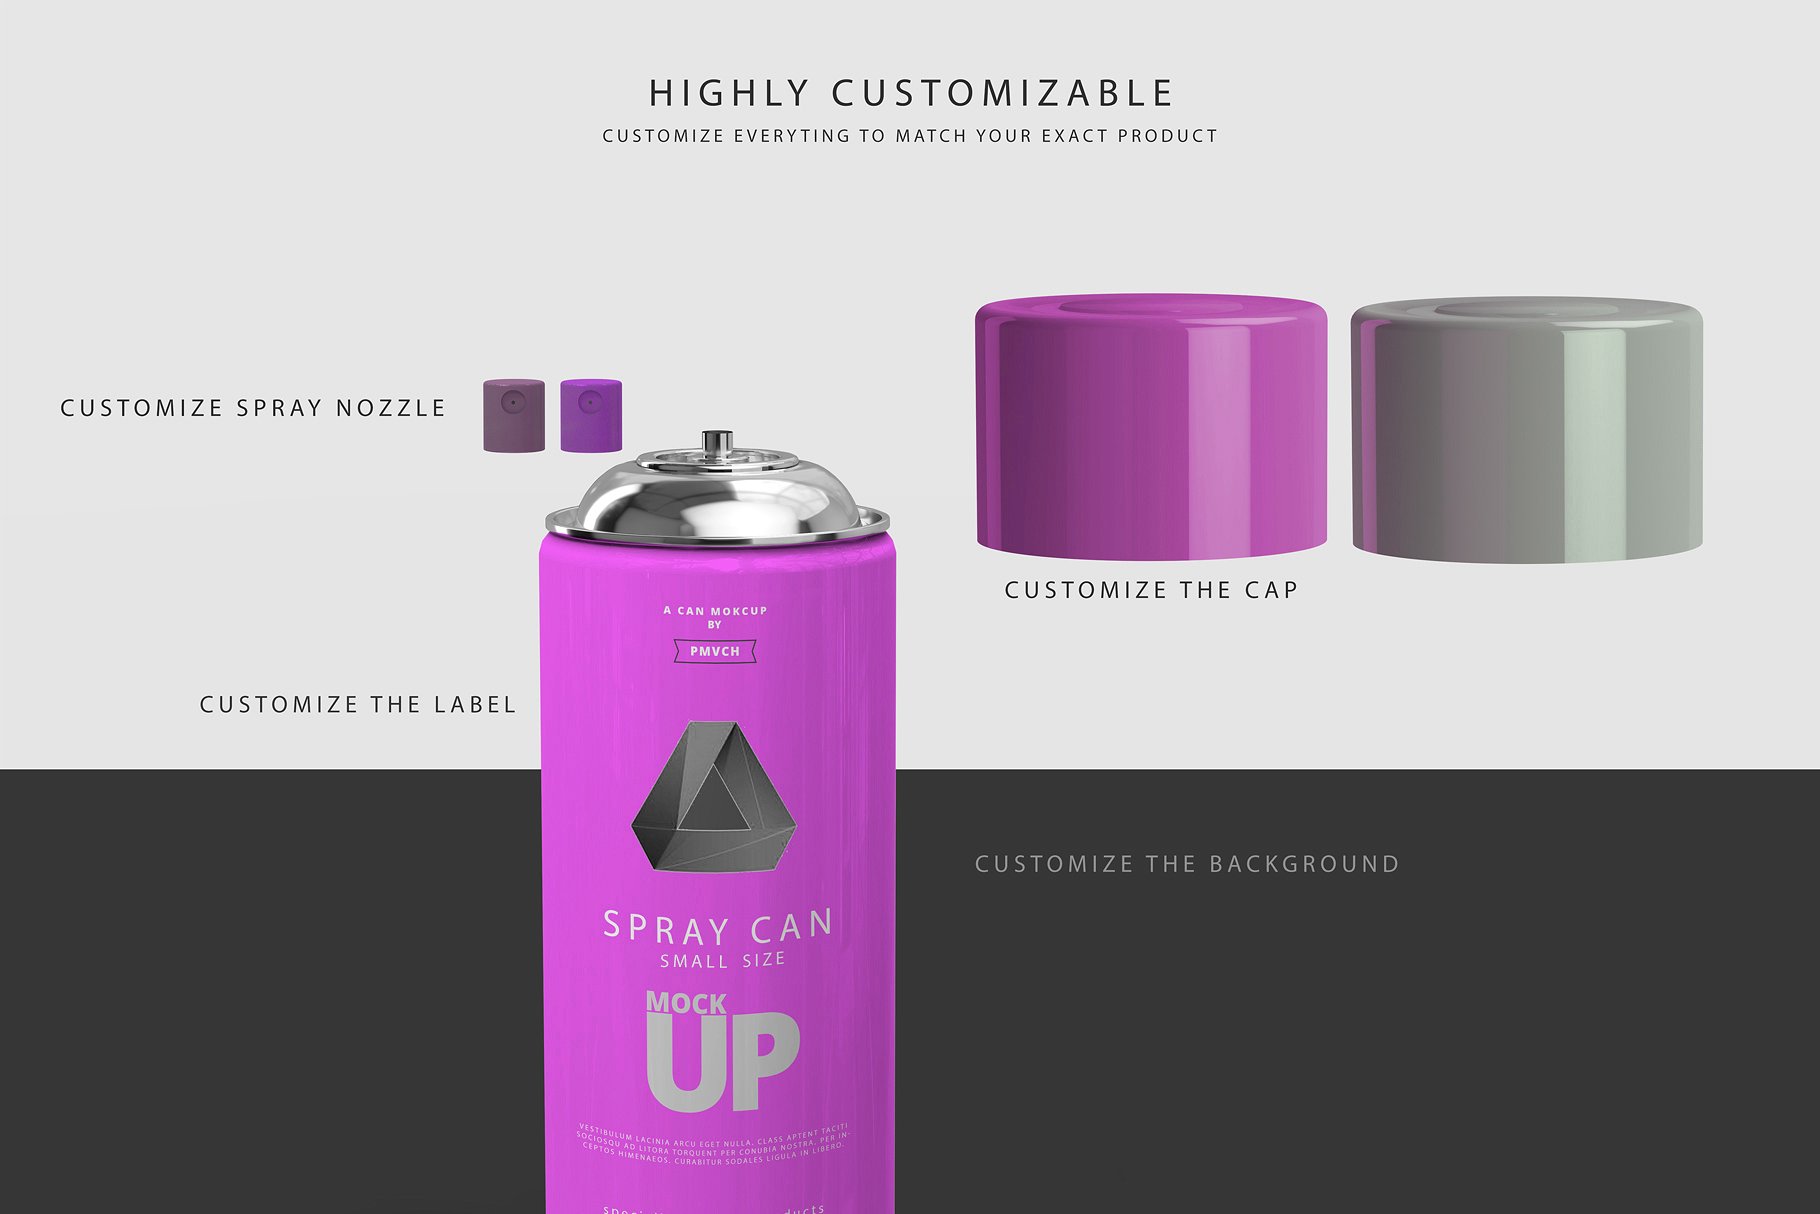 小型喷雾罐实体模型 Spray Can Mockup – Small Size插图1